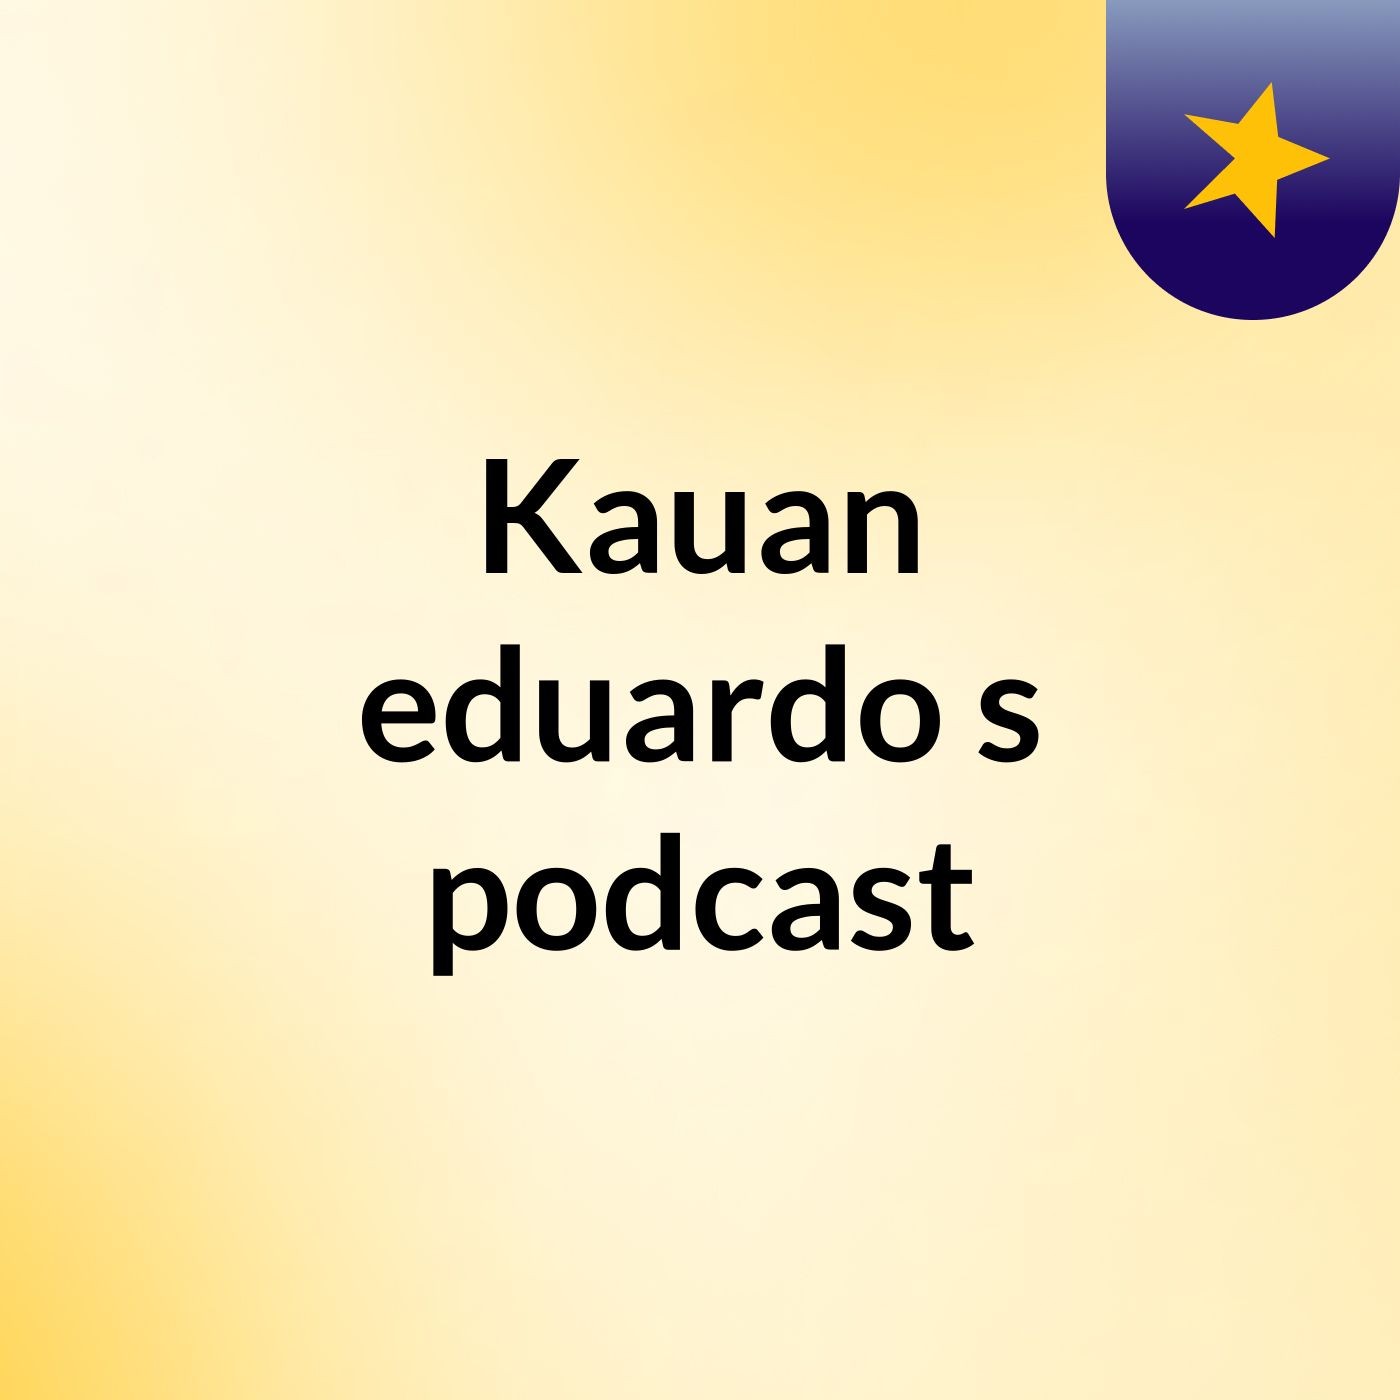 Kauan eduardo's podcast